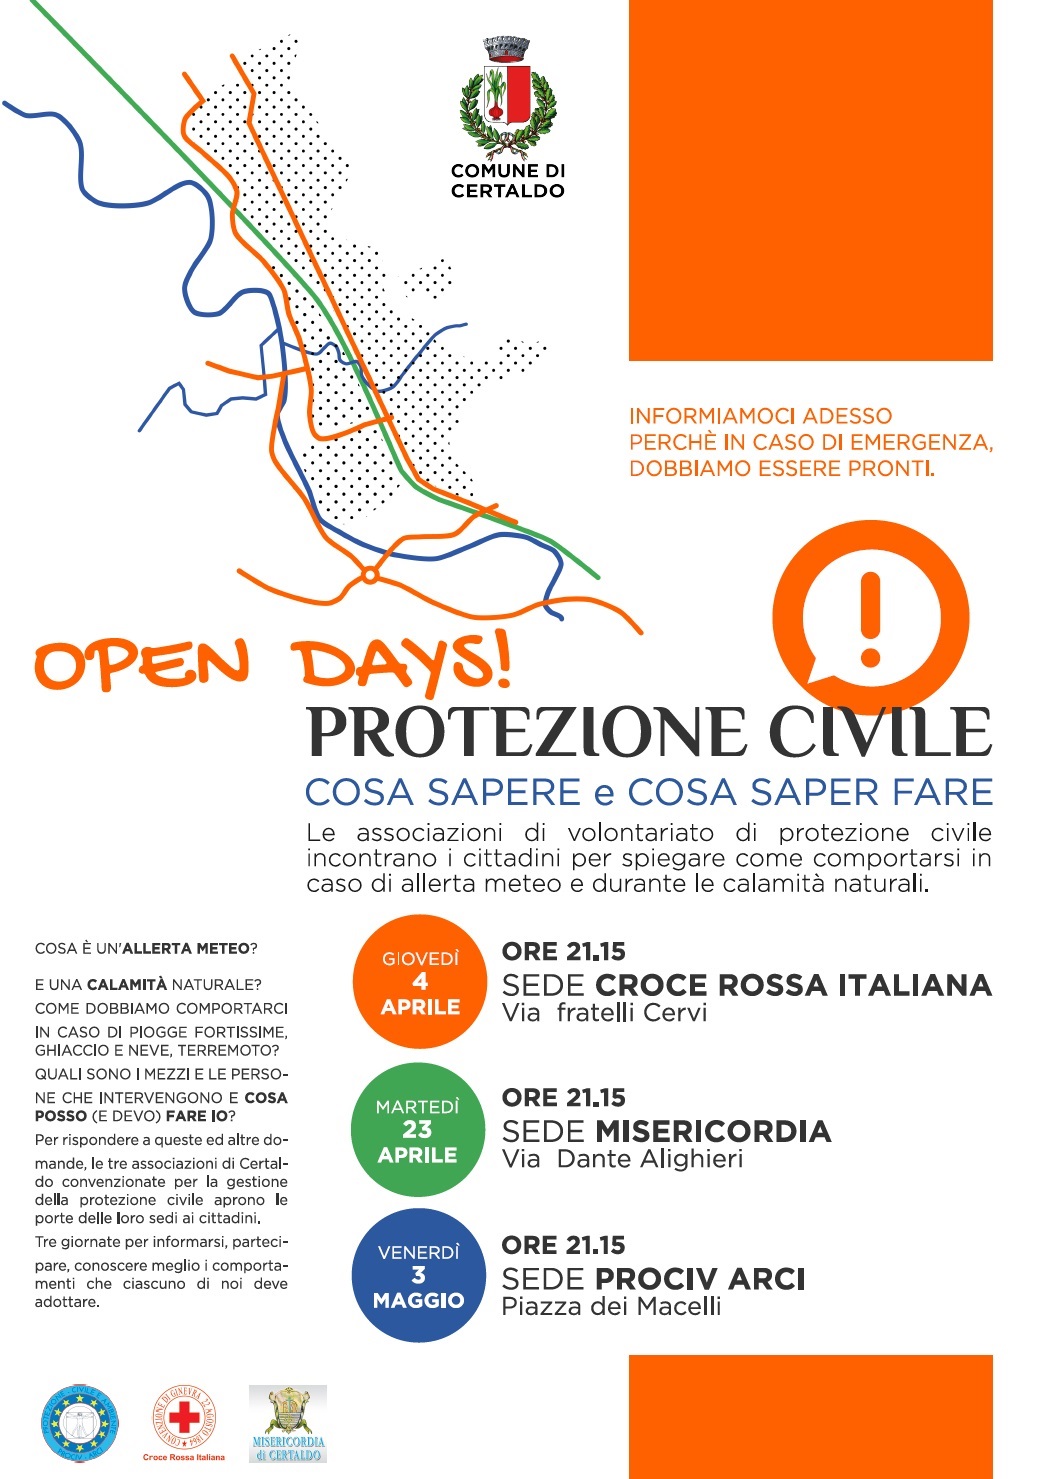 Protezione Civile Open Days